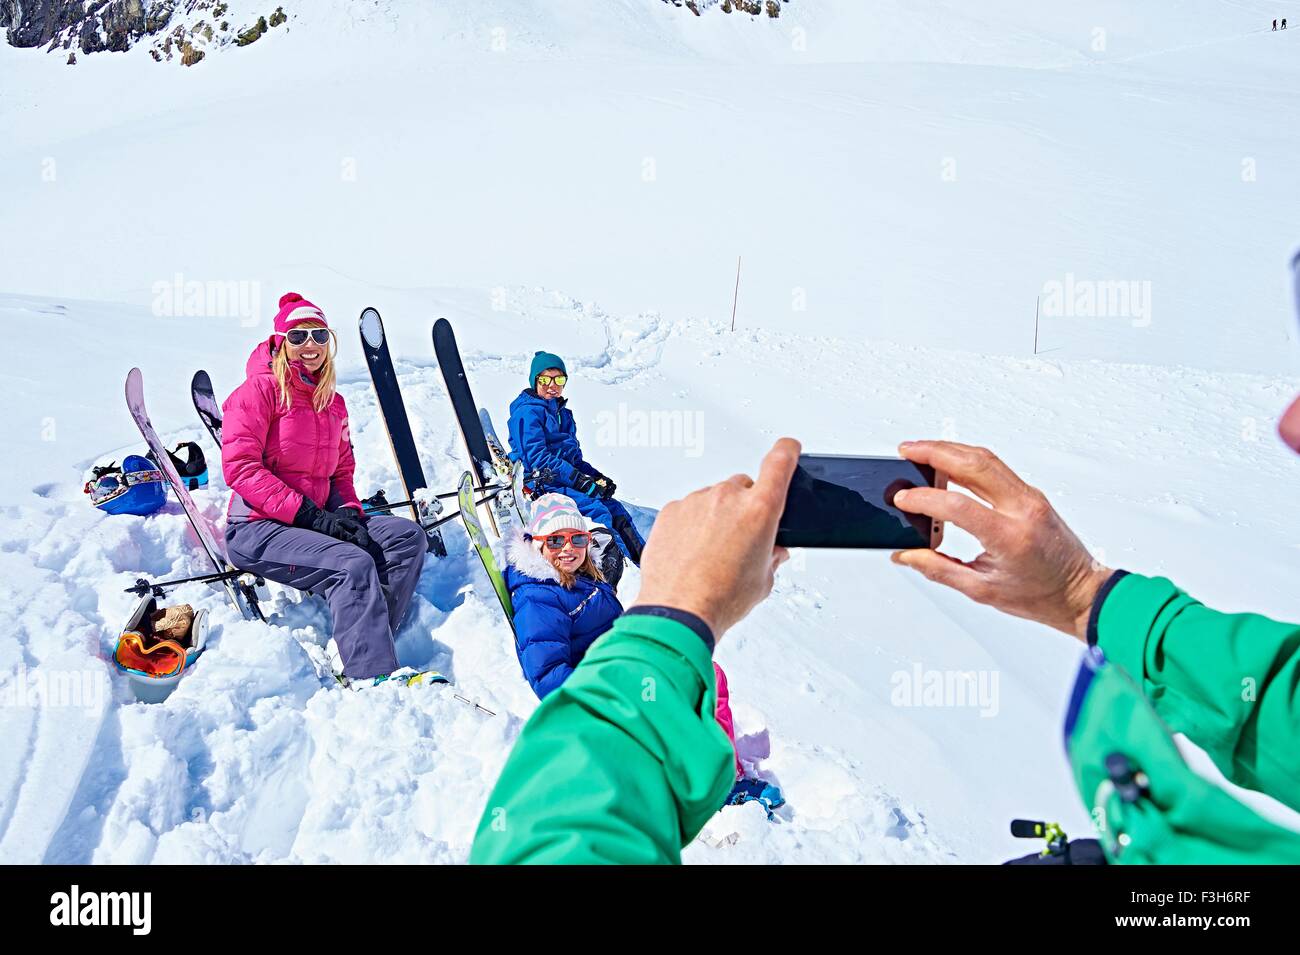 Photo de famille sur le voyage de ski, Chamonix, France Banque D'Images